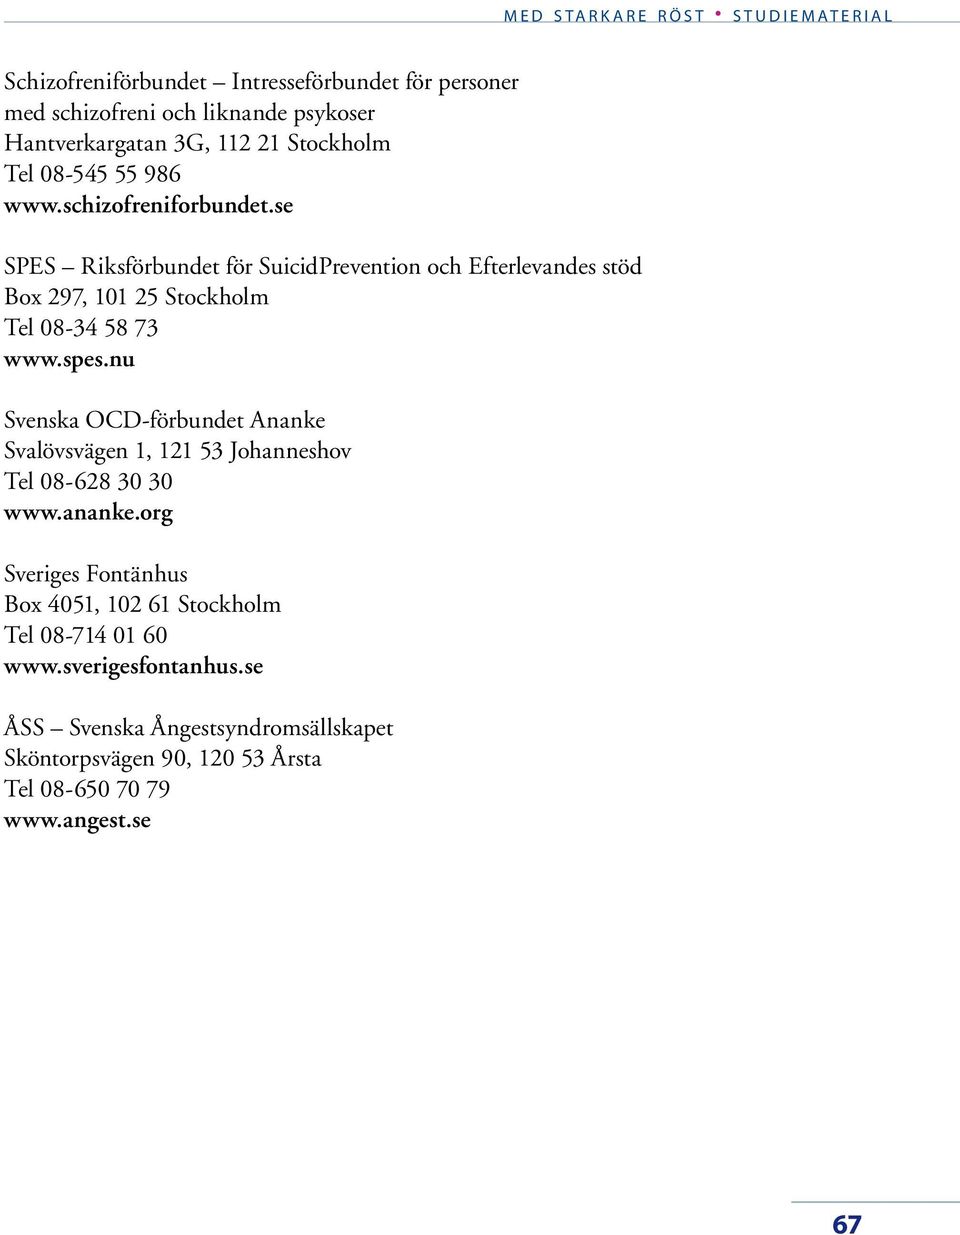 spes.nu Svenska OCD-förbundet Ananke Svalövsvägen 1, 121 53 Johanneshov Tel 08-628 30 30 www.ananke.